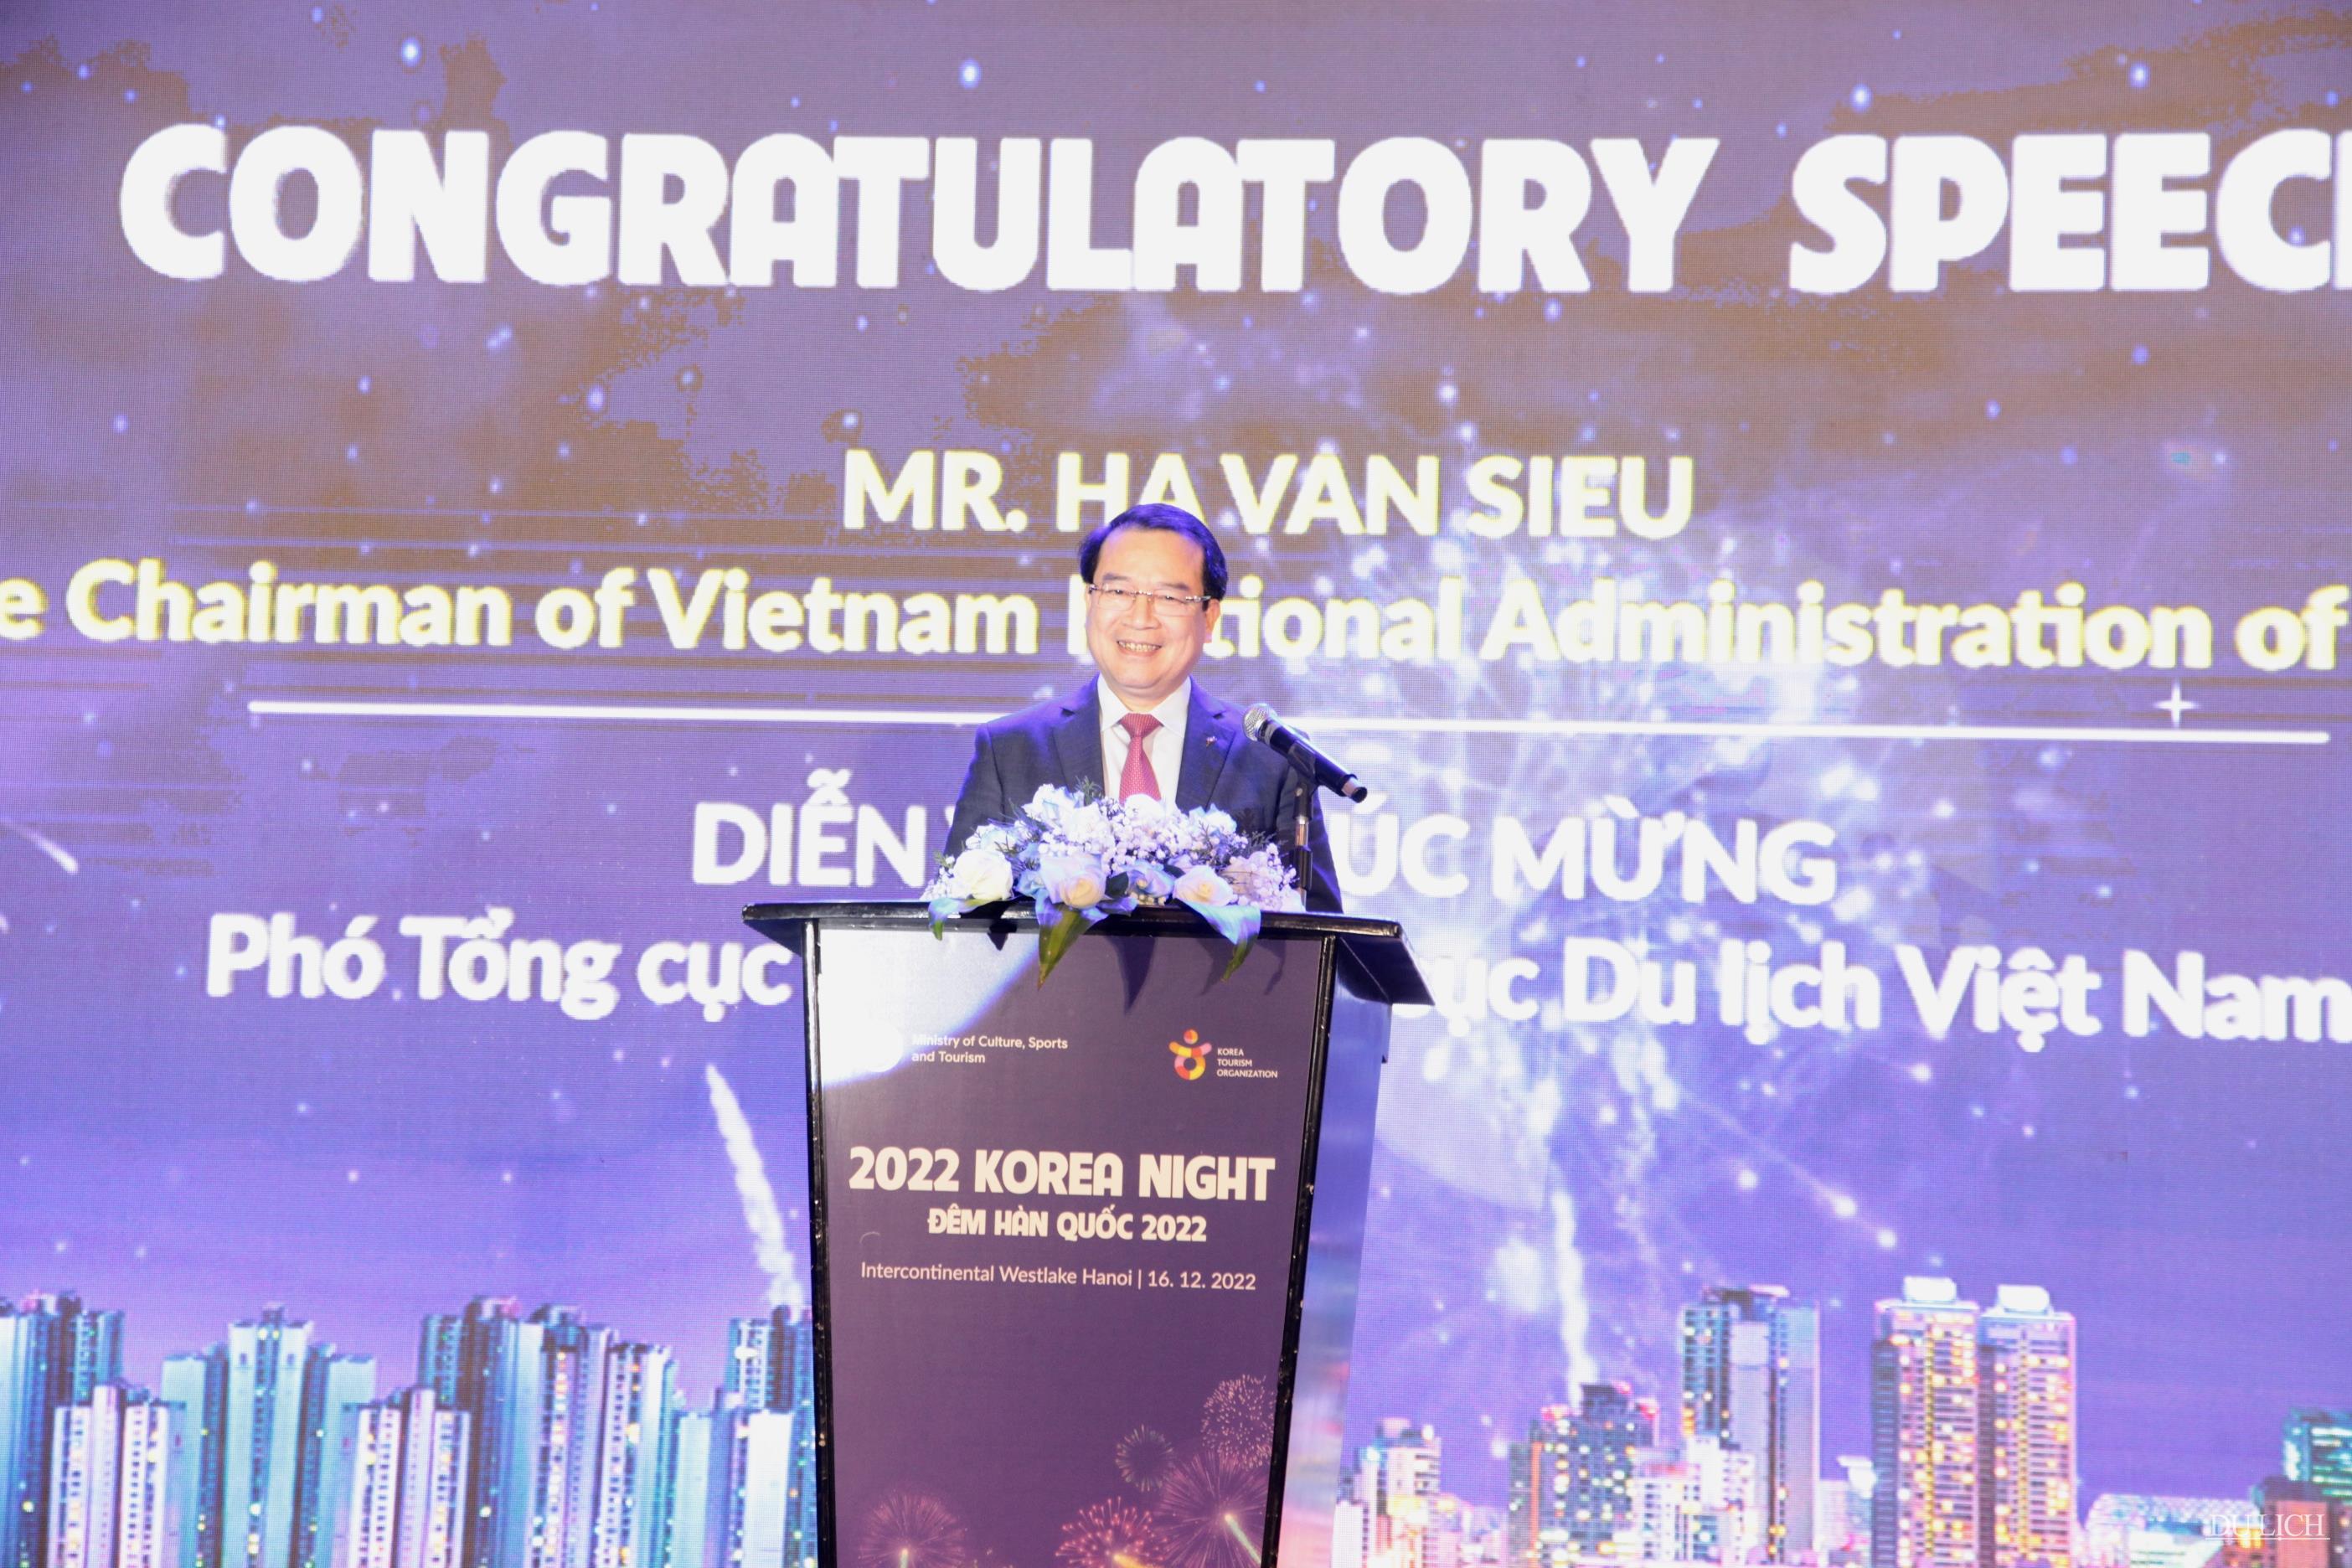 Phó Tổng cục trưởng TCDL Việt Nam Hà Văn Siêu phát biểu tại chương trình